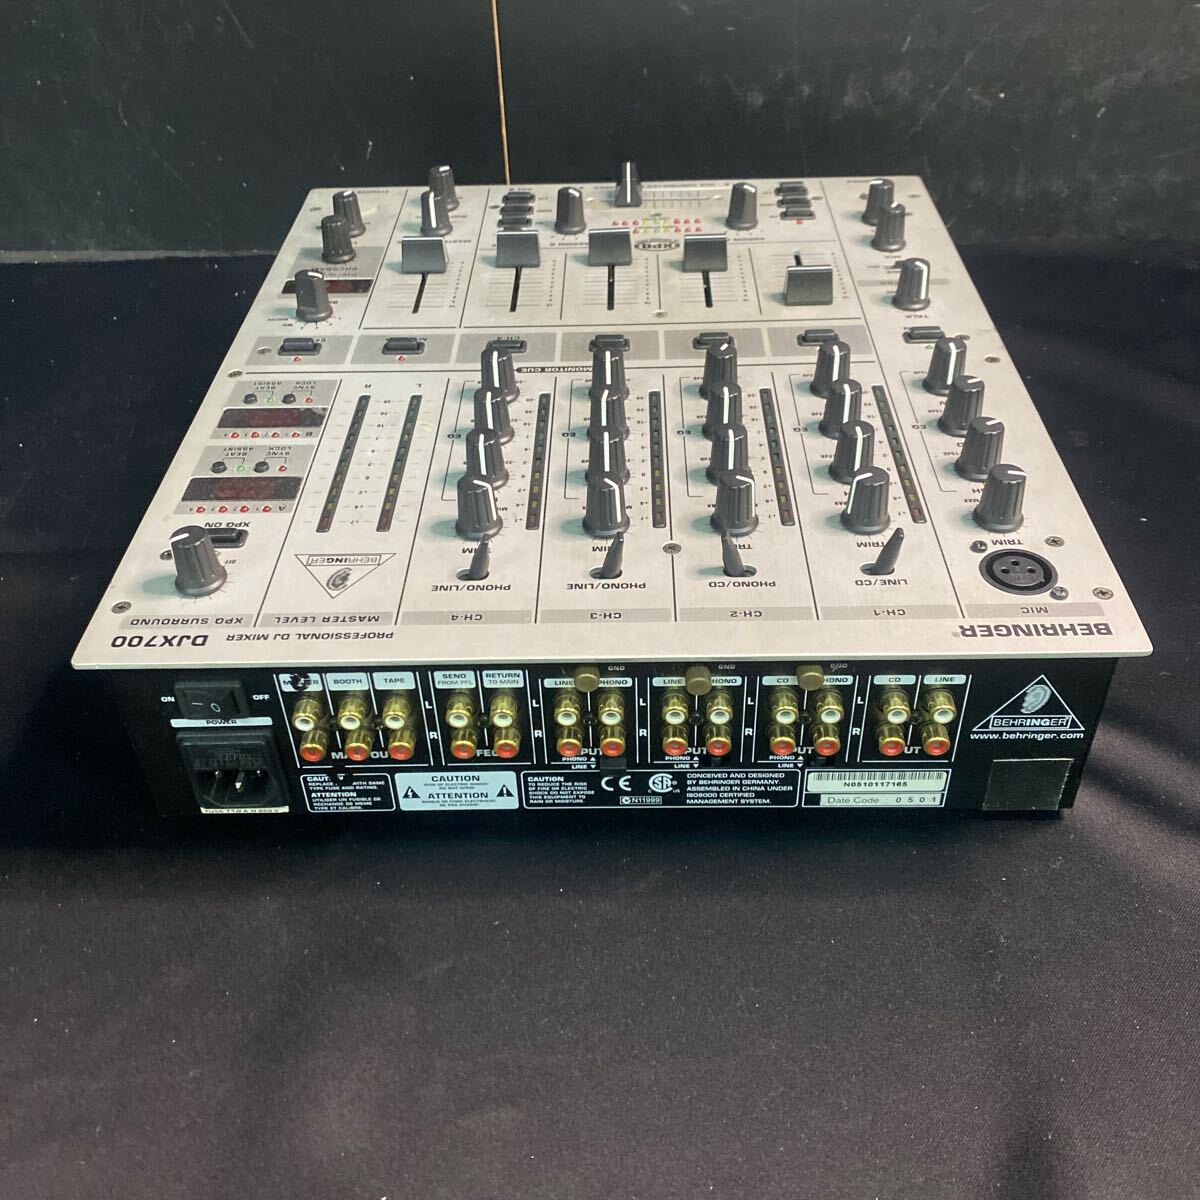 167 BEHRINGER Behringer Professional DJ миксер DJX700 Pro миксер электризация возможность 